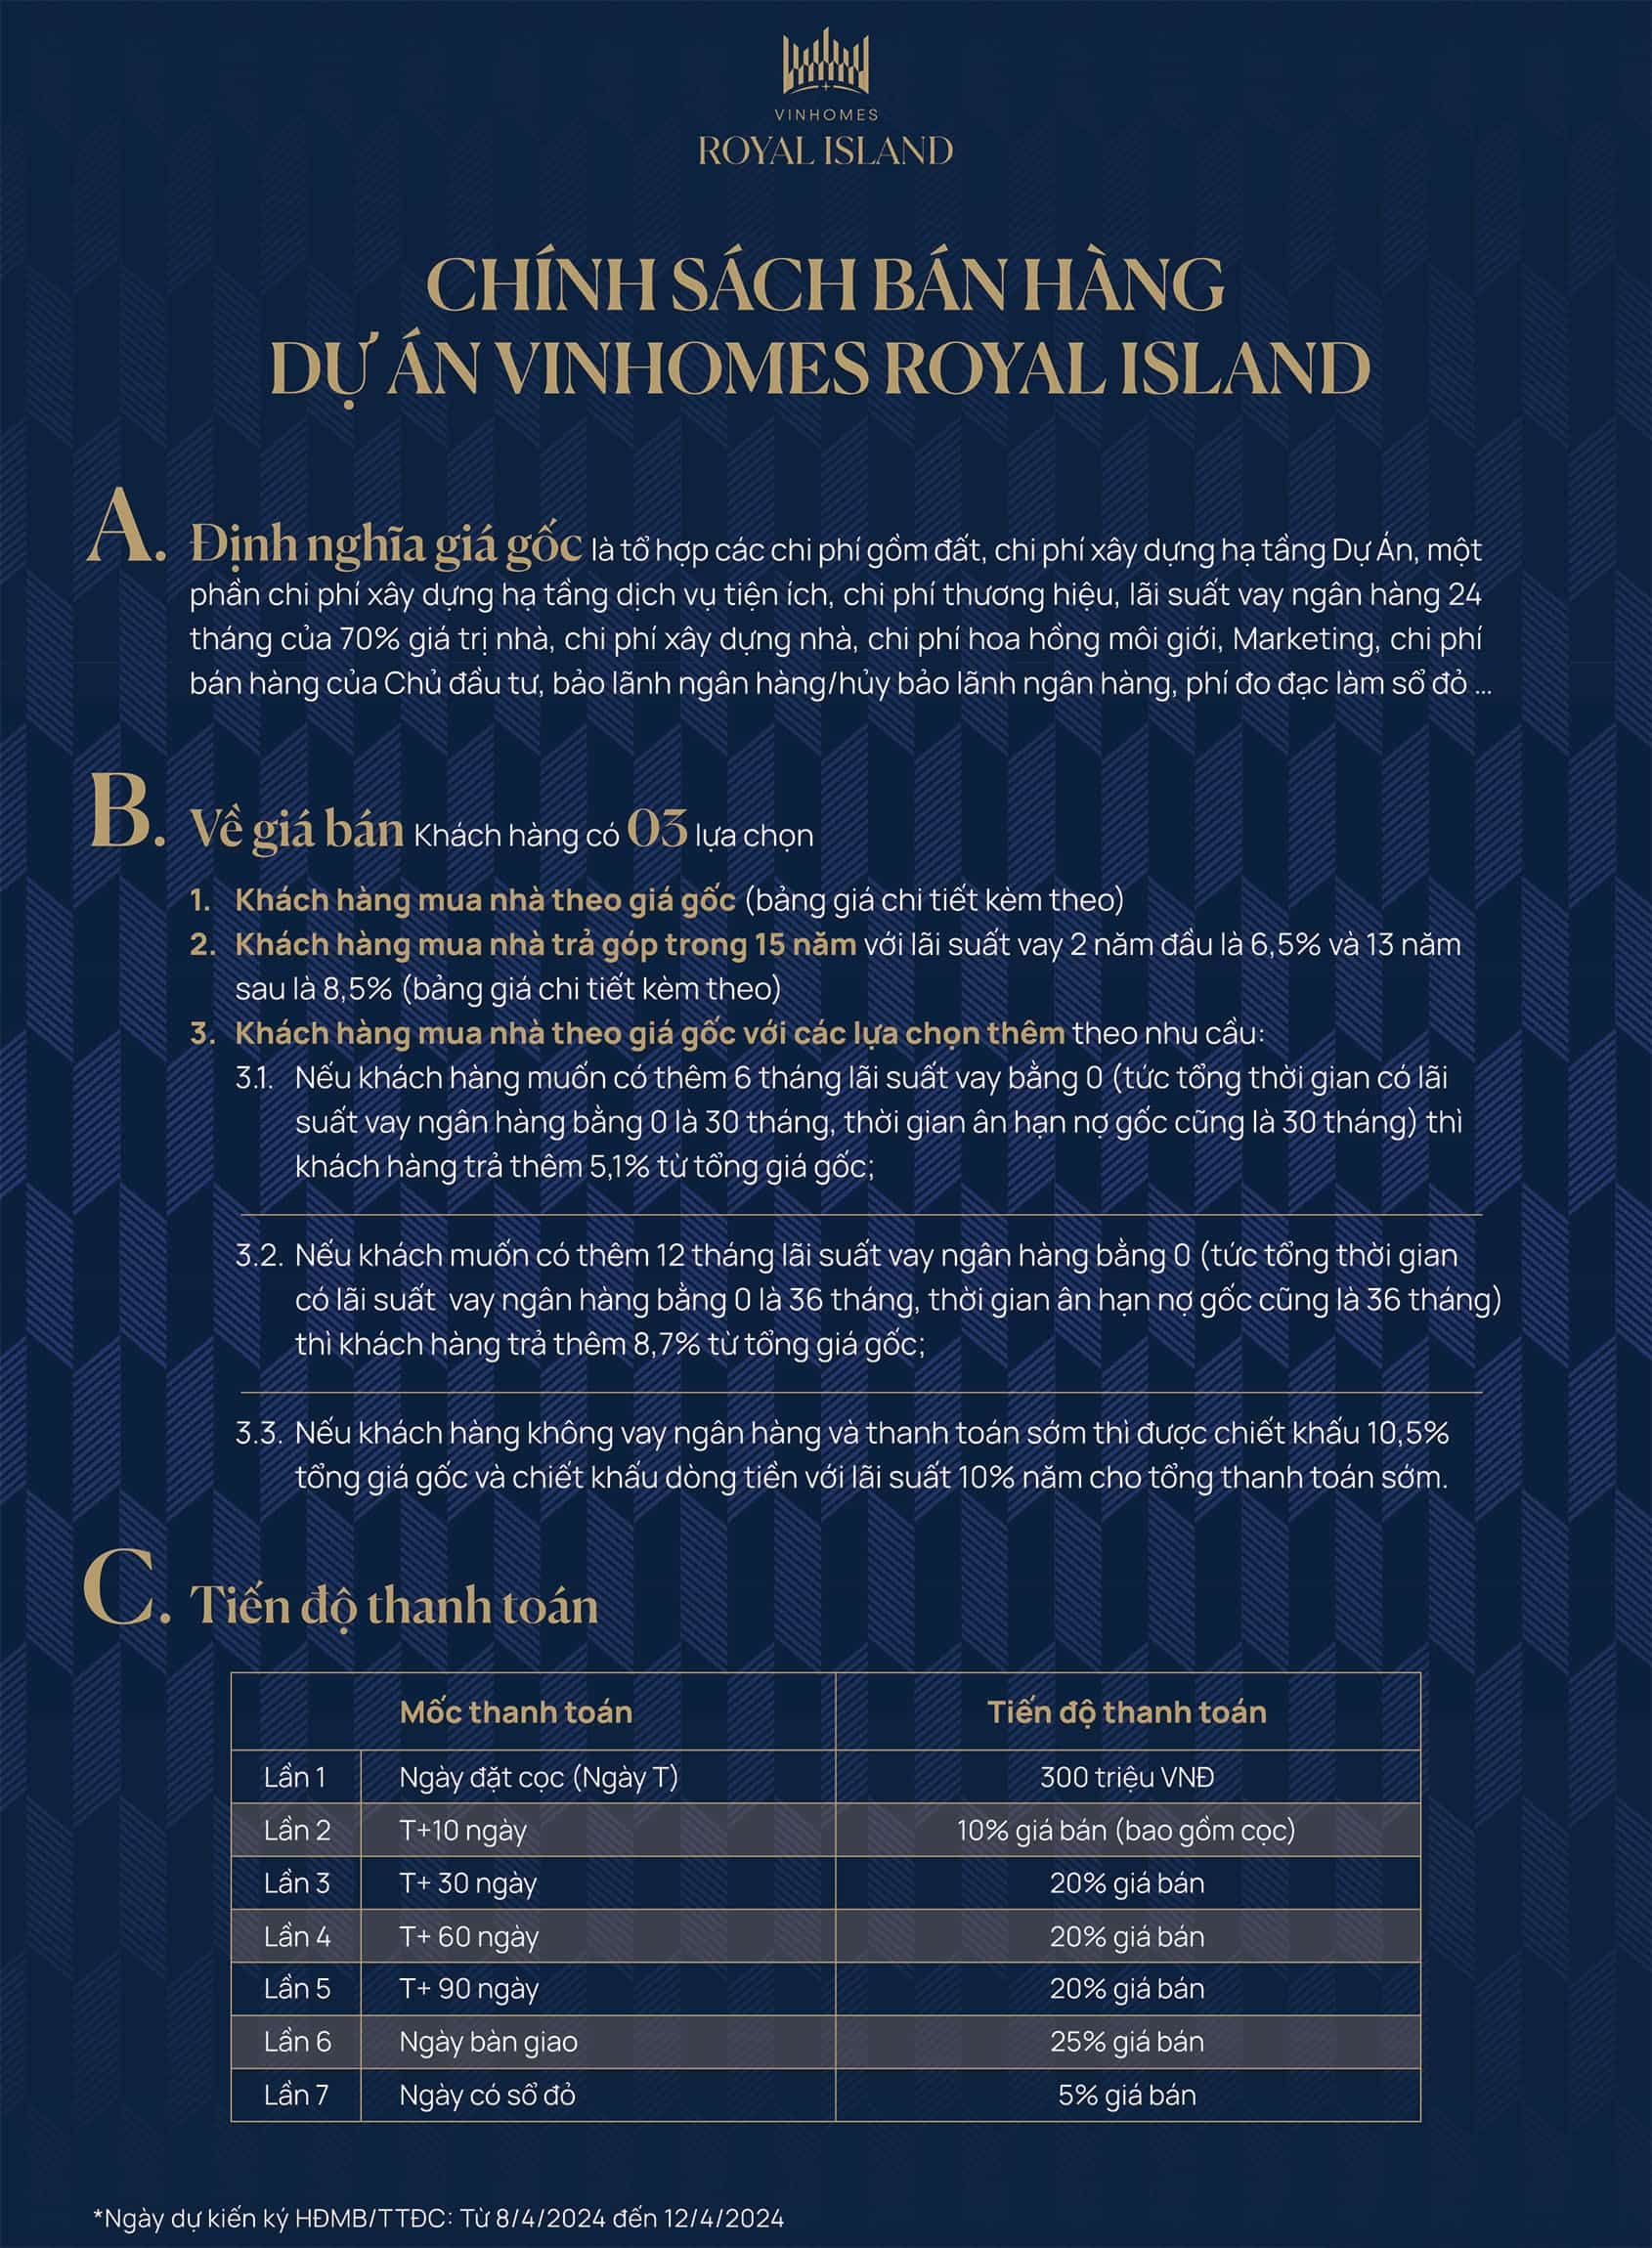 Chính sách bán hàng dự án Vinhomes Royal Island.